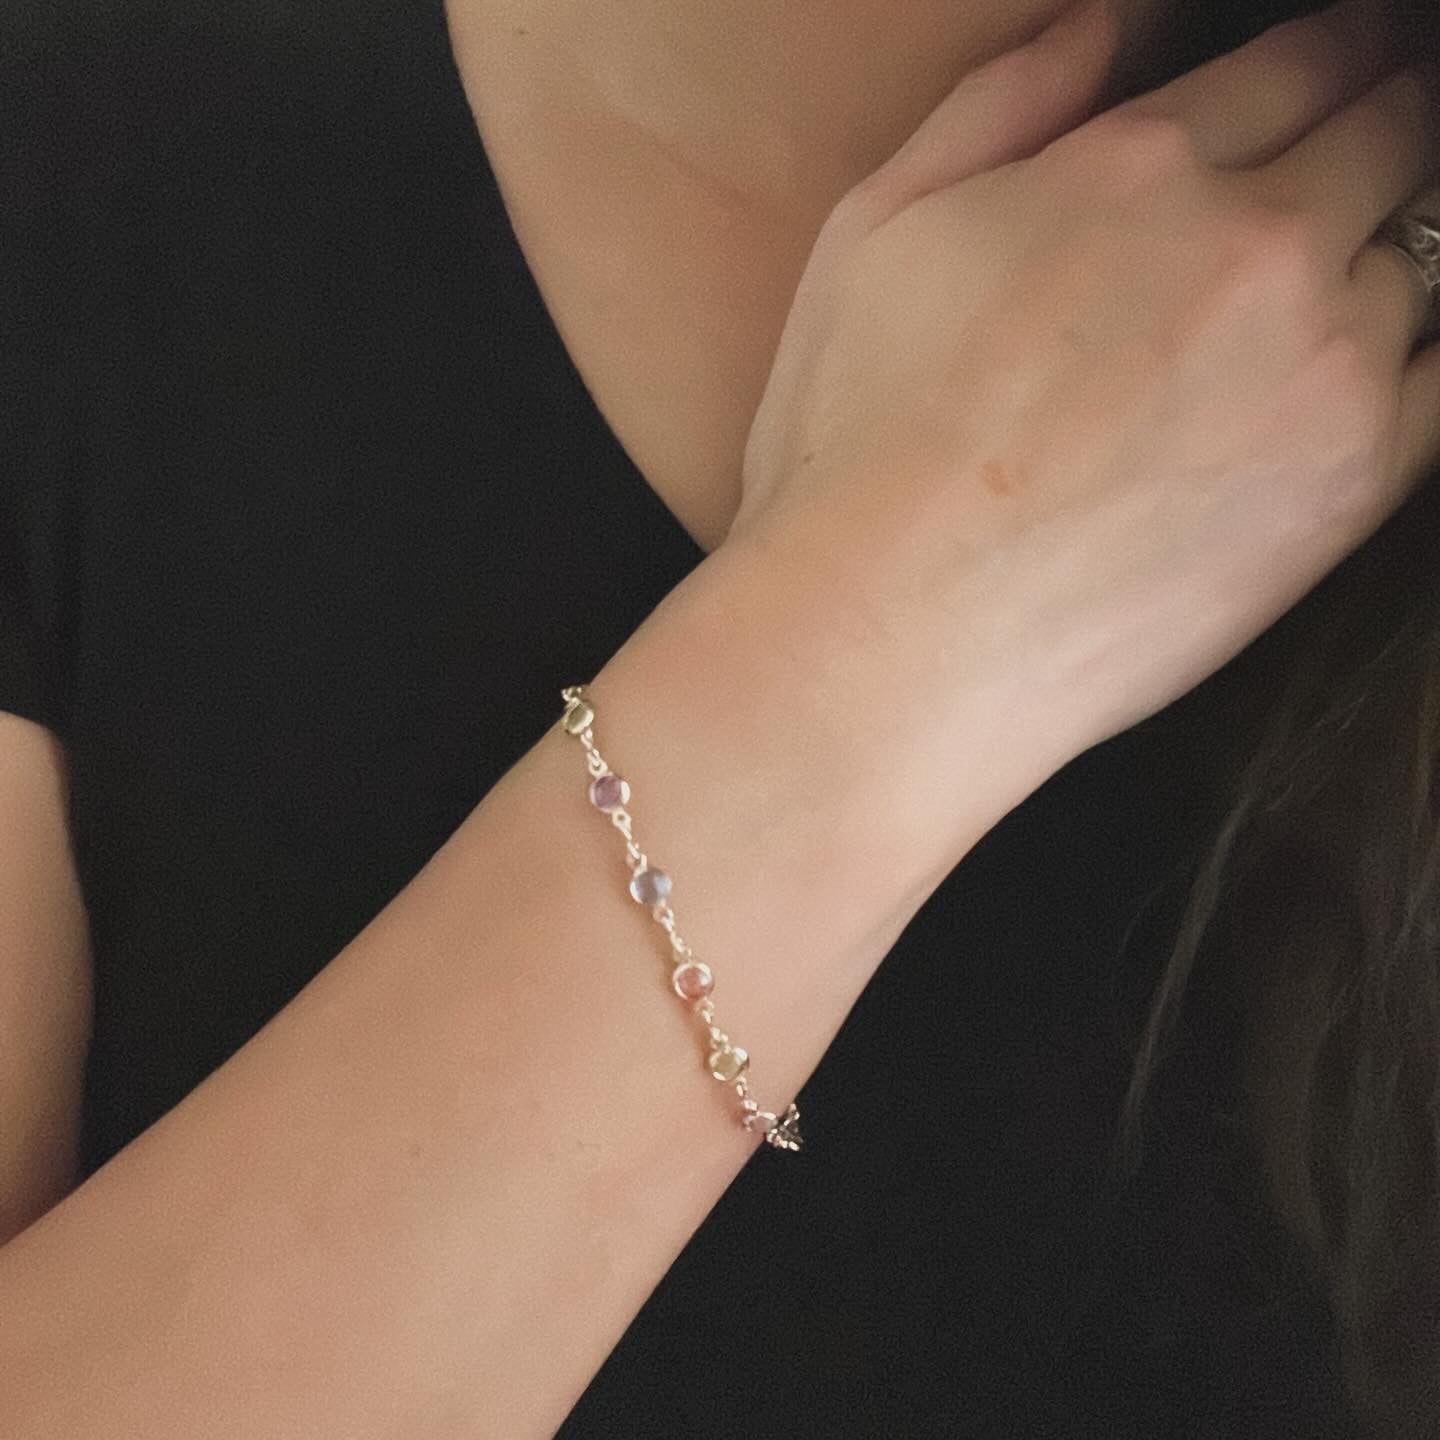 Bejeweled Bracelet - Gold Filled